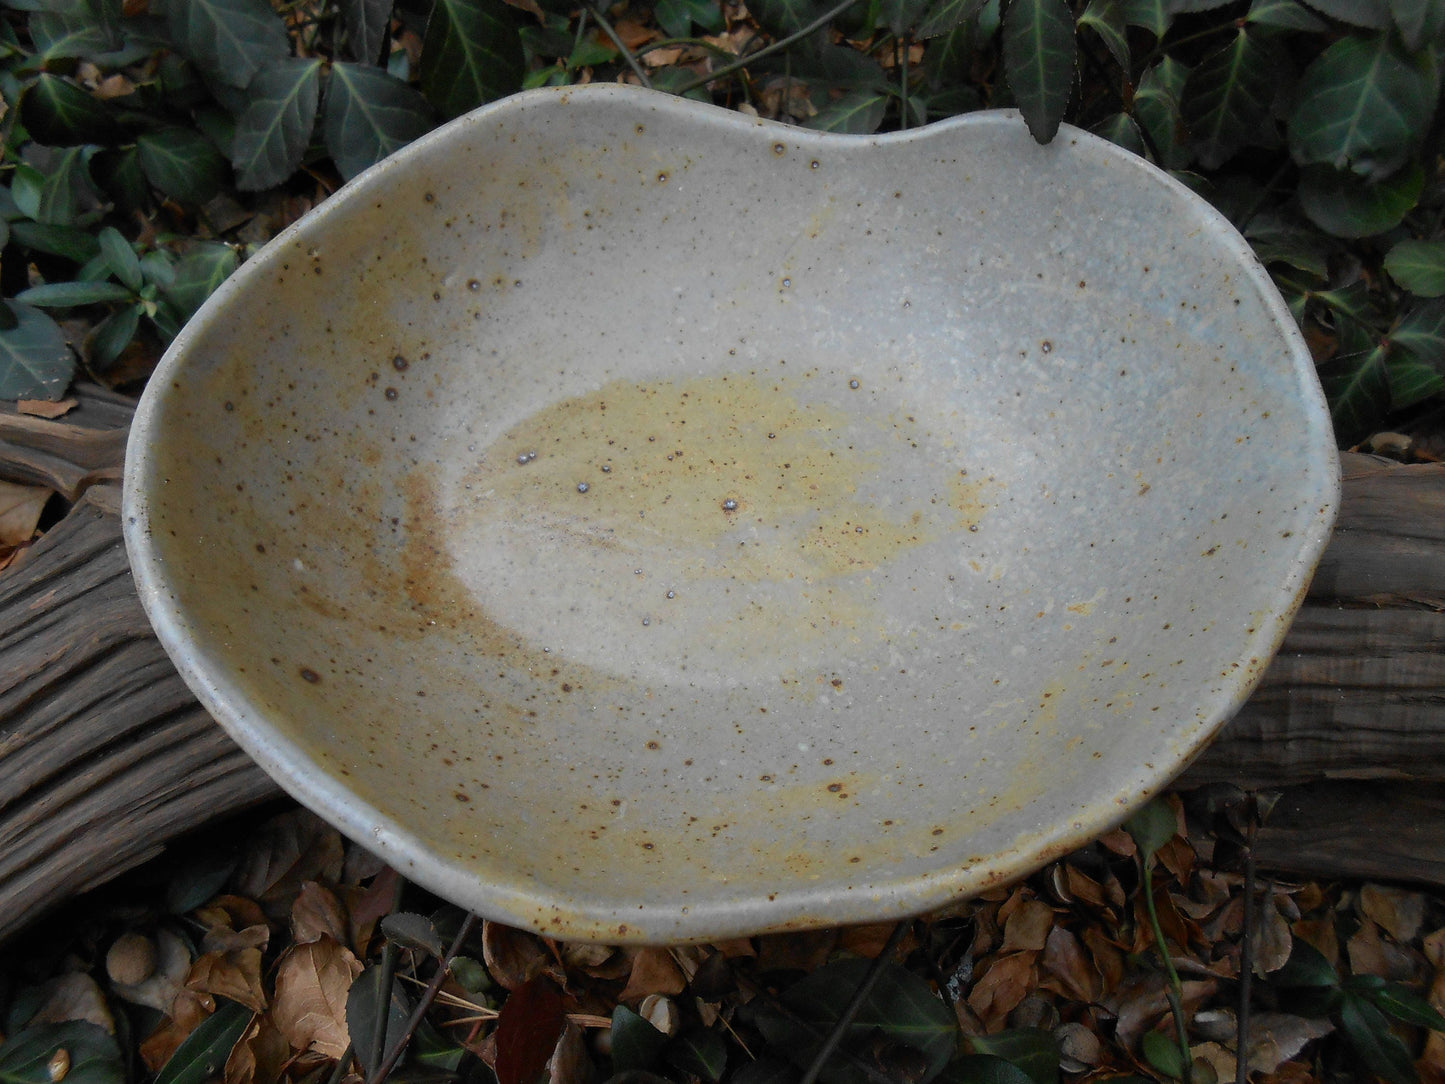 Robin's Egg Laced Ceramic Bowl